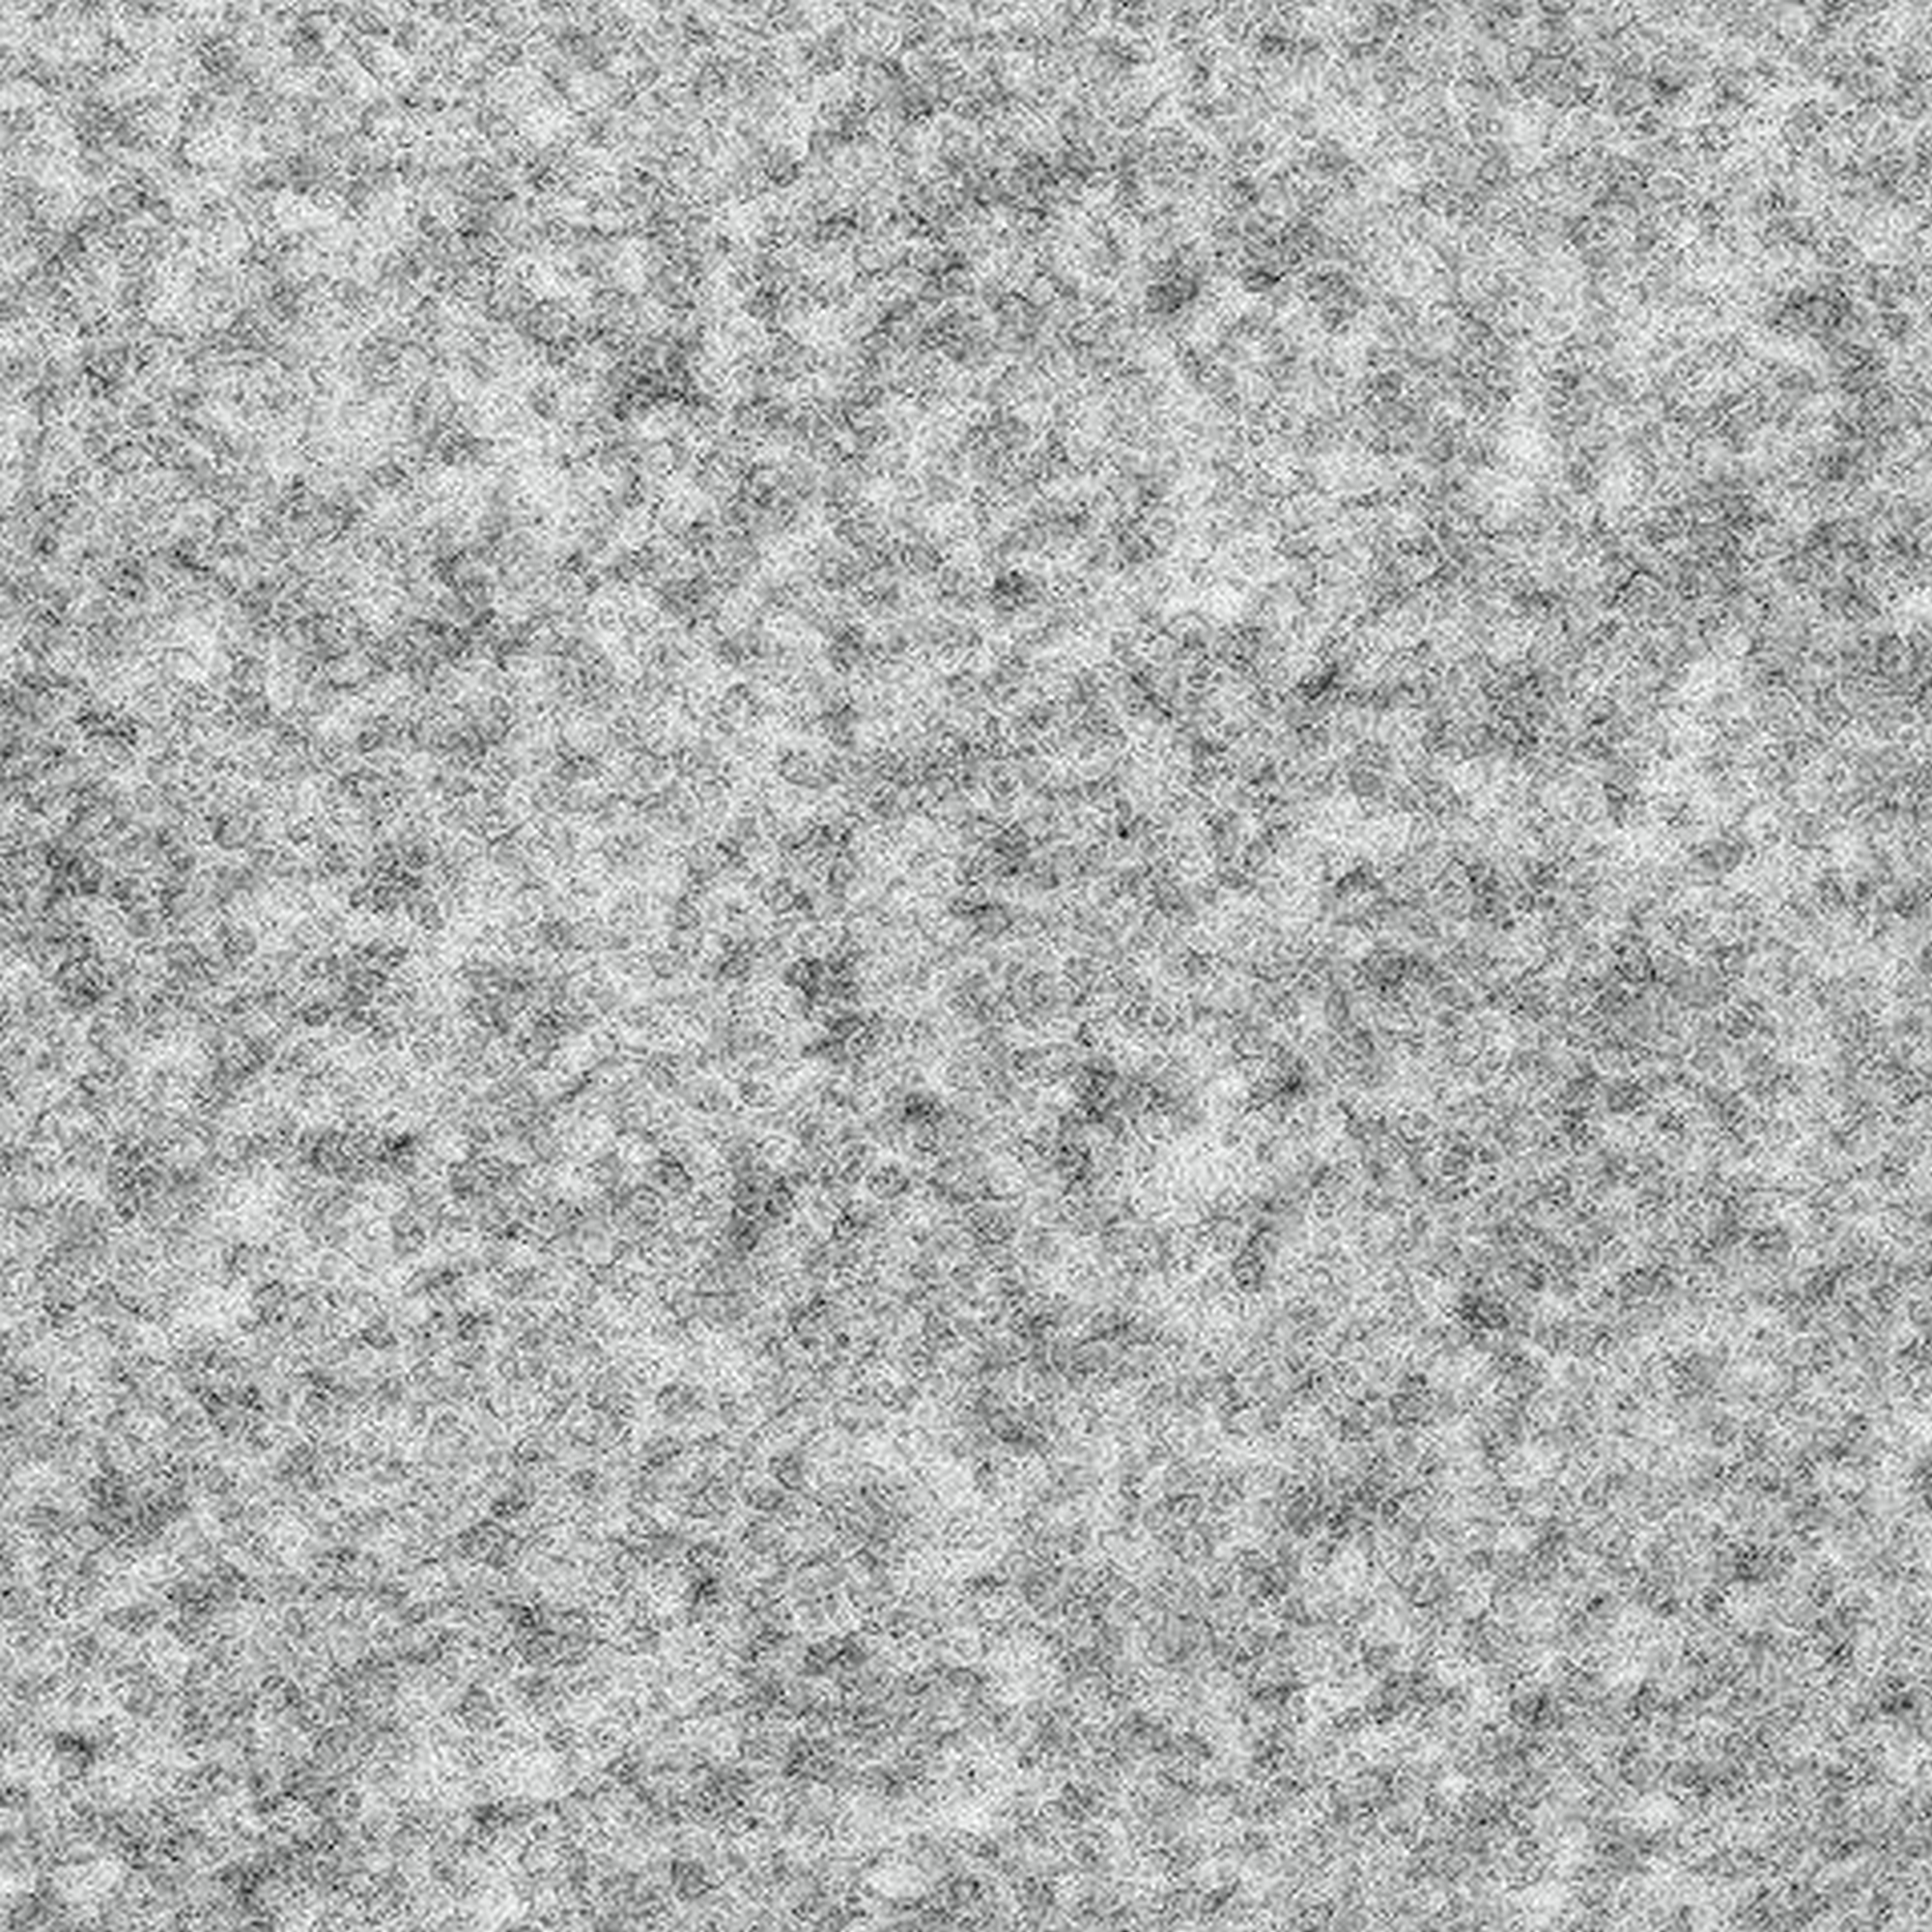 Rasenteppich 'Ambrosia No. 910' 400 x 3000 cm grau + product picture